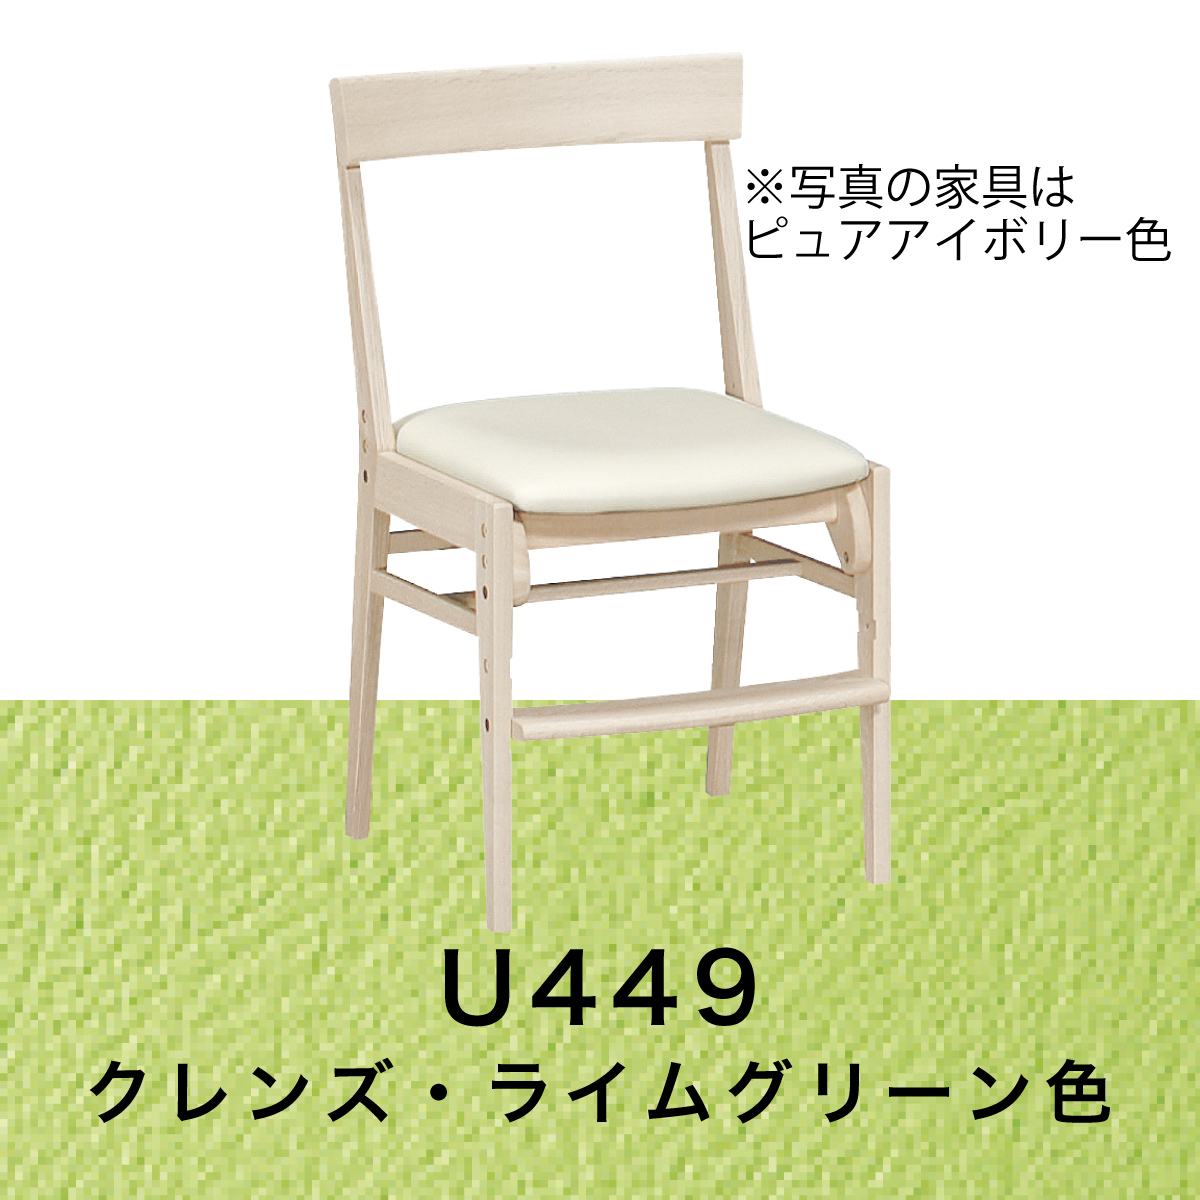 カリモク 椅子 子供 学習椅子 XT0611 木製 シアーホワイト 白 デスク 